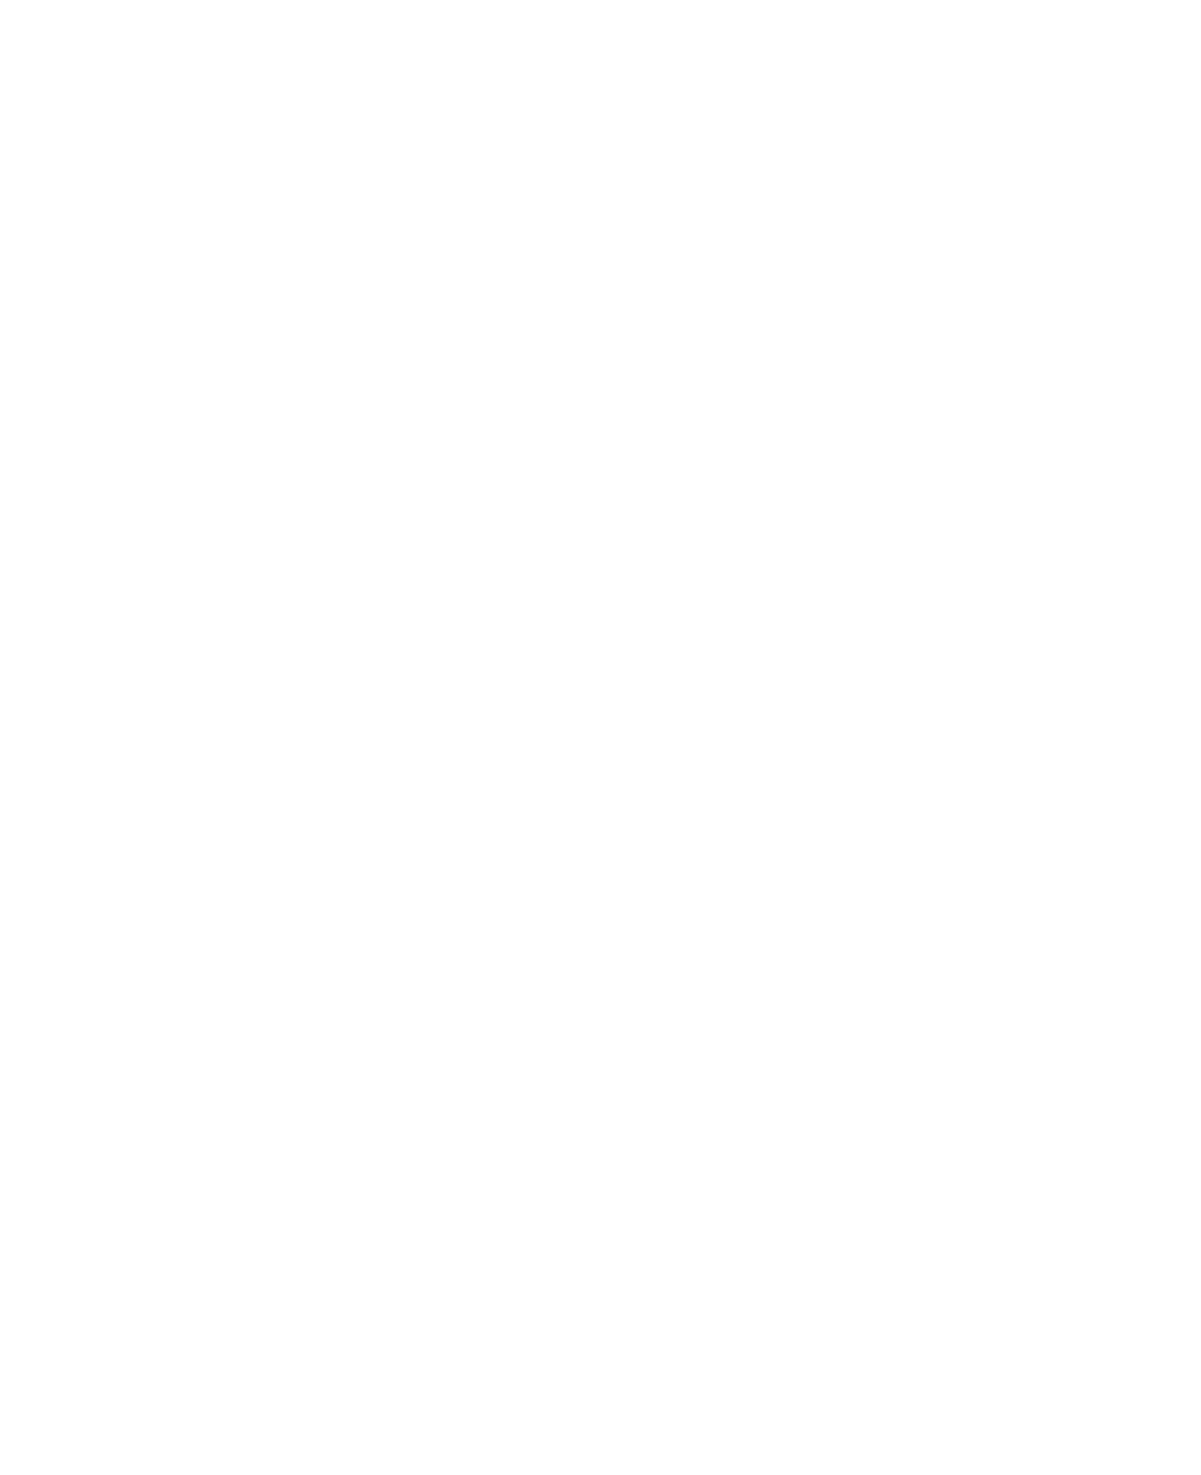 CPM MERITAGE 2022